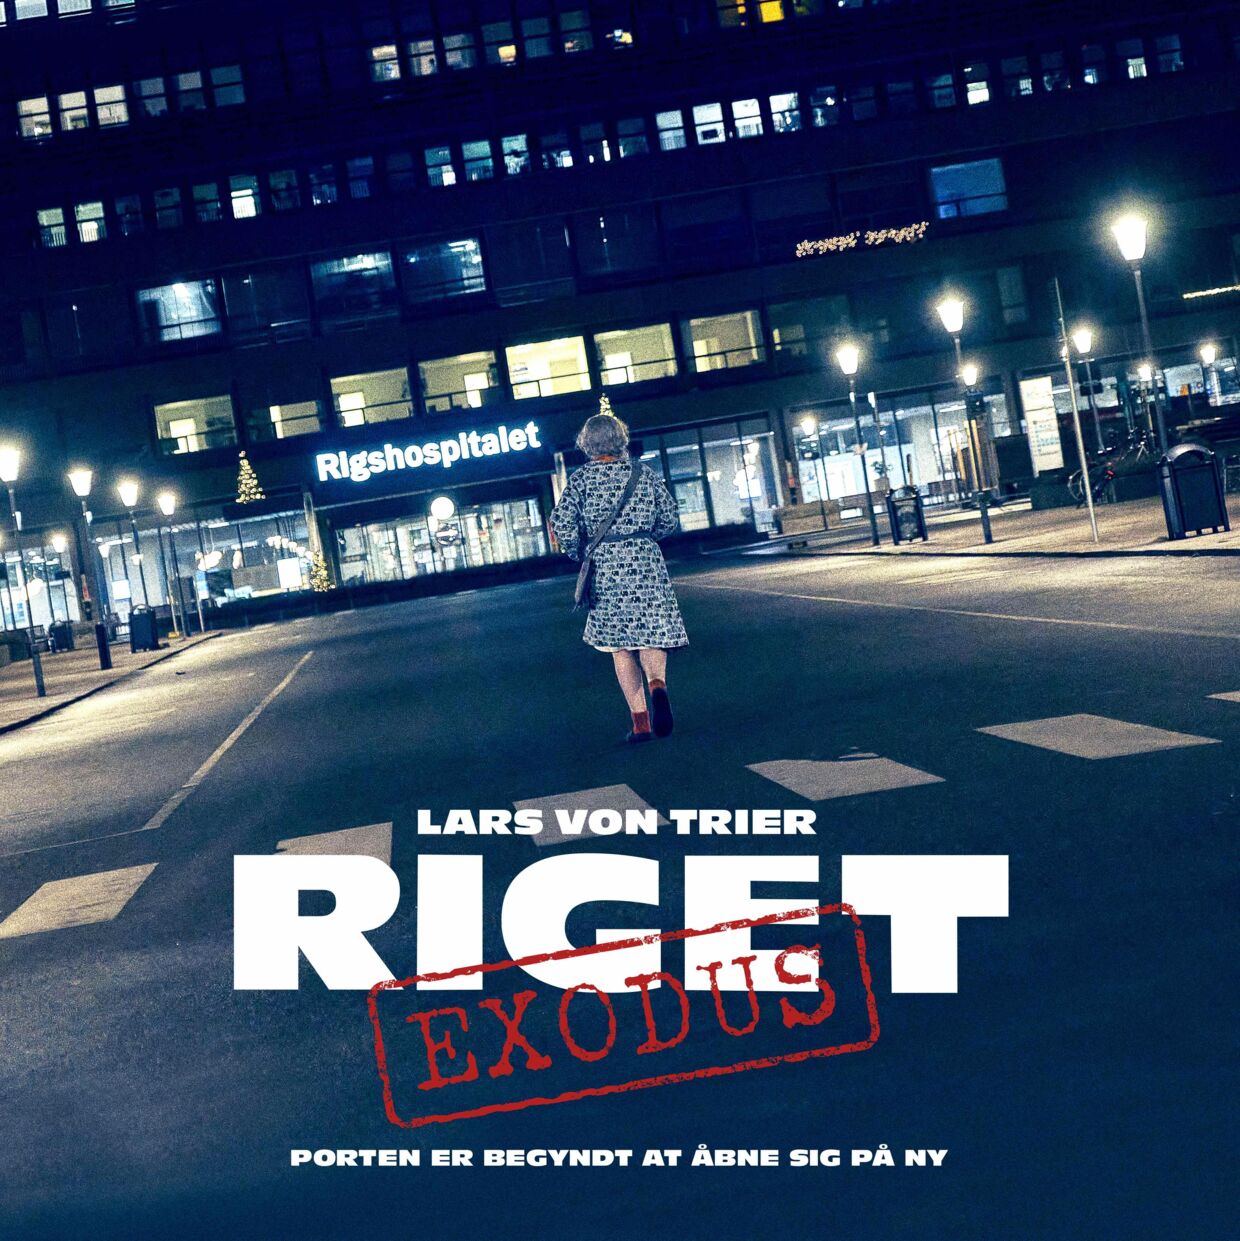 Således ser plakaten for 'RIGET EXODUS', Lars von Triers sidste sæson af 'Riget', ud.